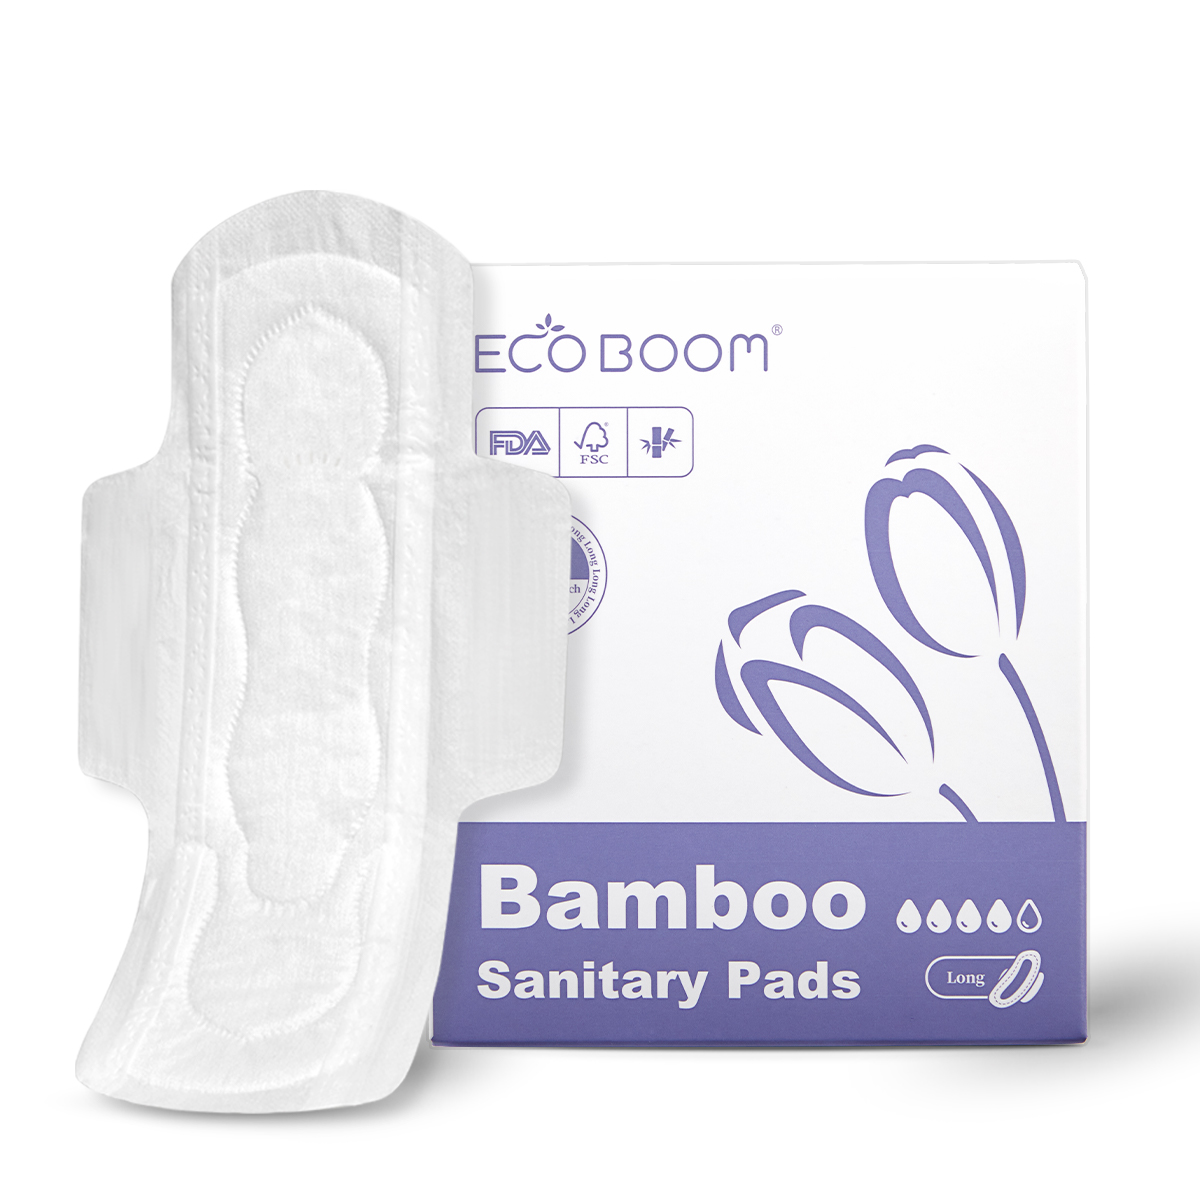 ECO BOOM bamboo sanitary napkins distribution-2